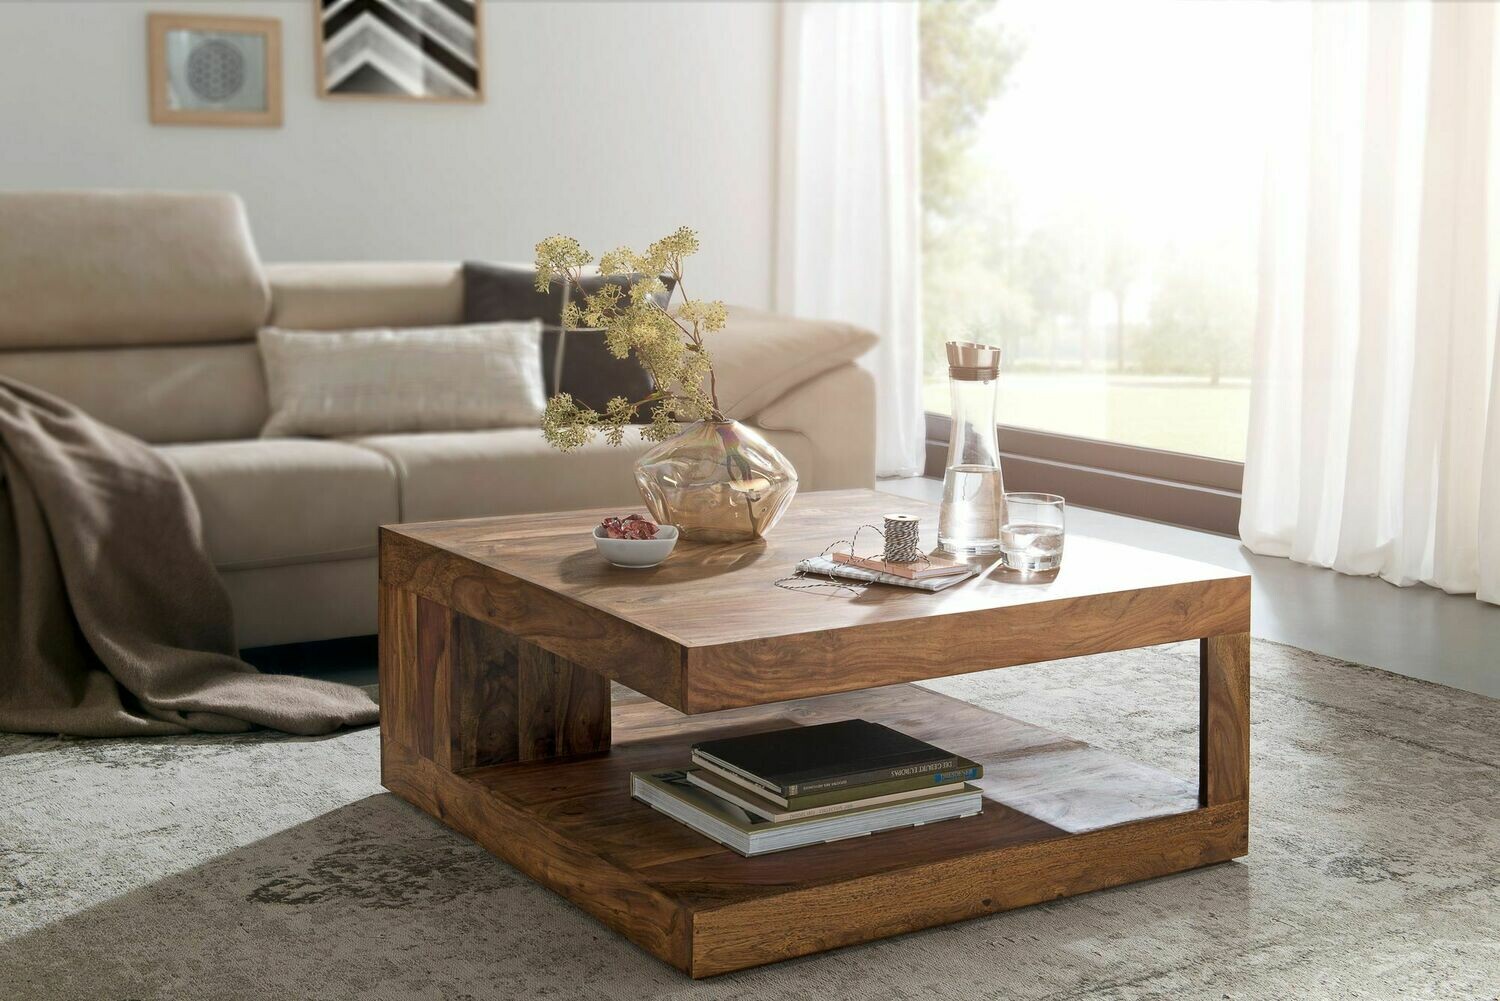 Couchtisch MUMBAI Massiv-Holz Sheesham 90 cm breit Design Wohnzimmer-Tisch dunkel-braun Landhaus-Stil Beistelltisch